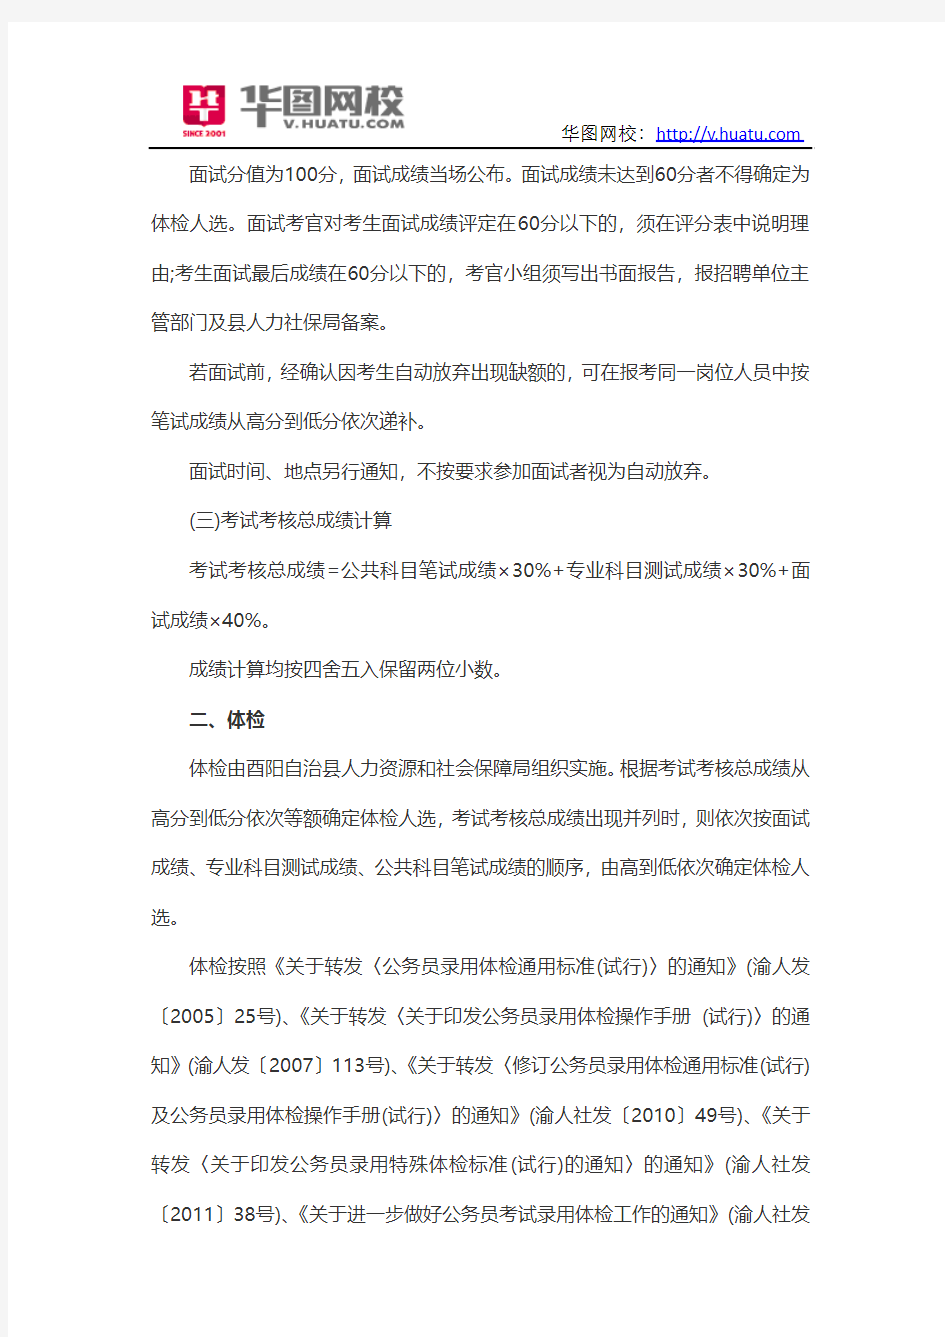 2014年重庆市酉阳自治县事业单位招聘考试内容